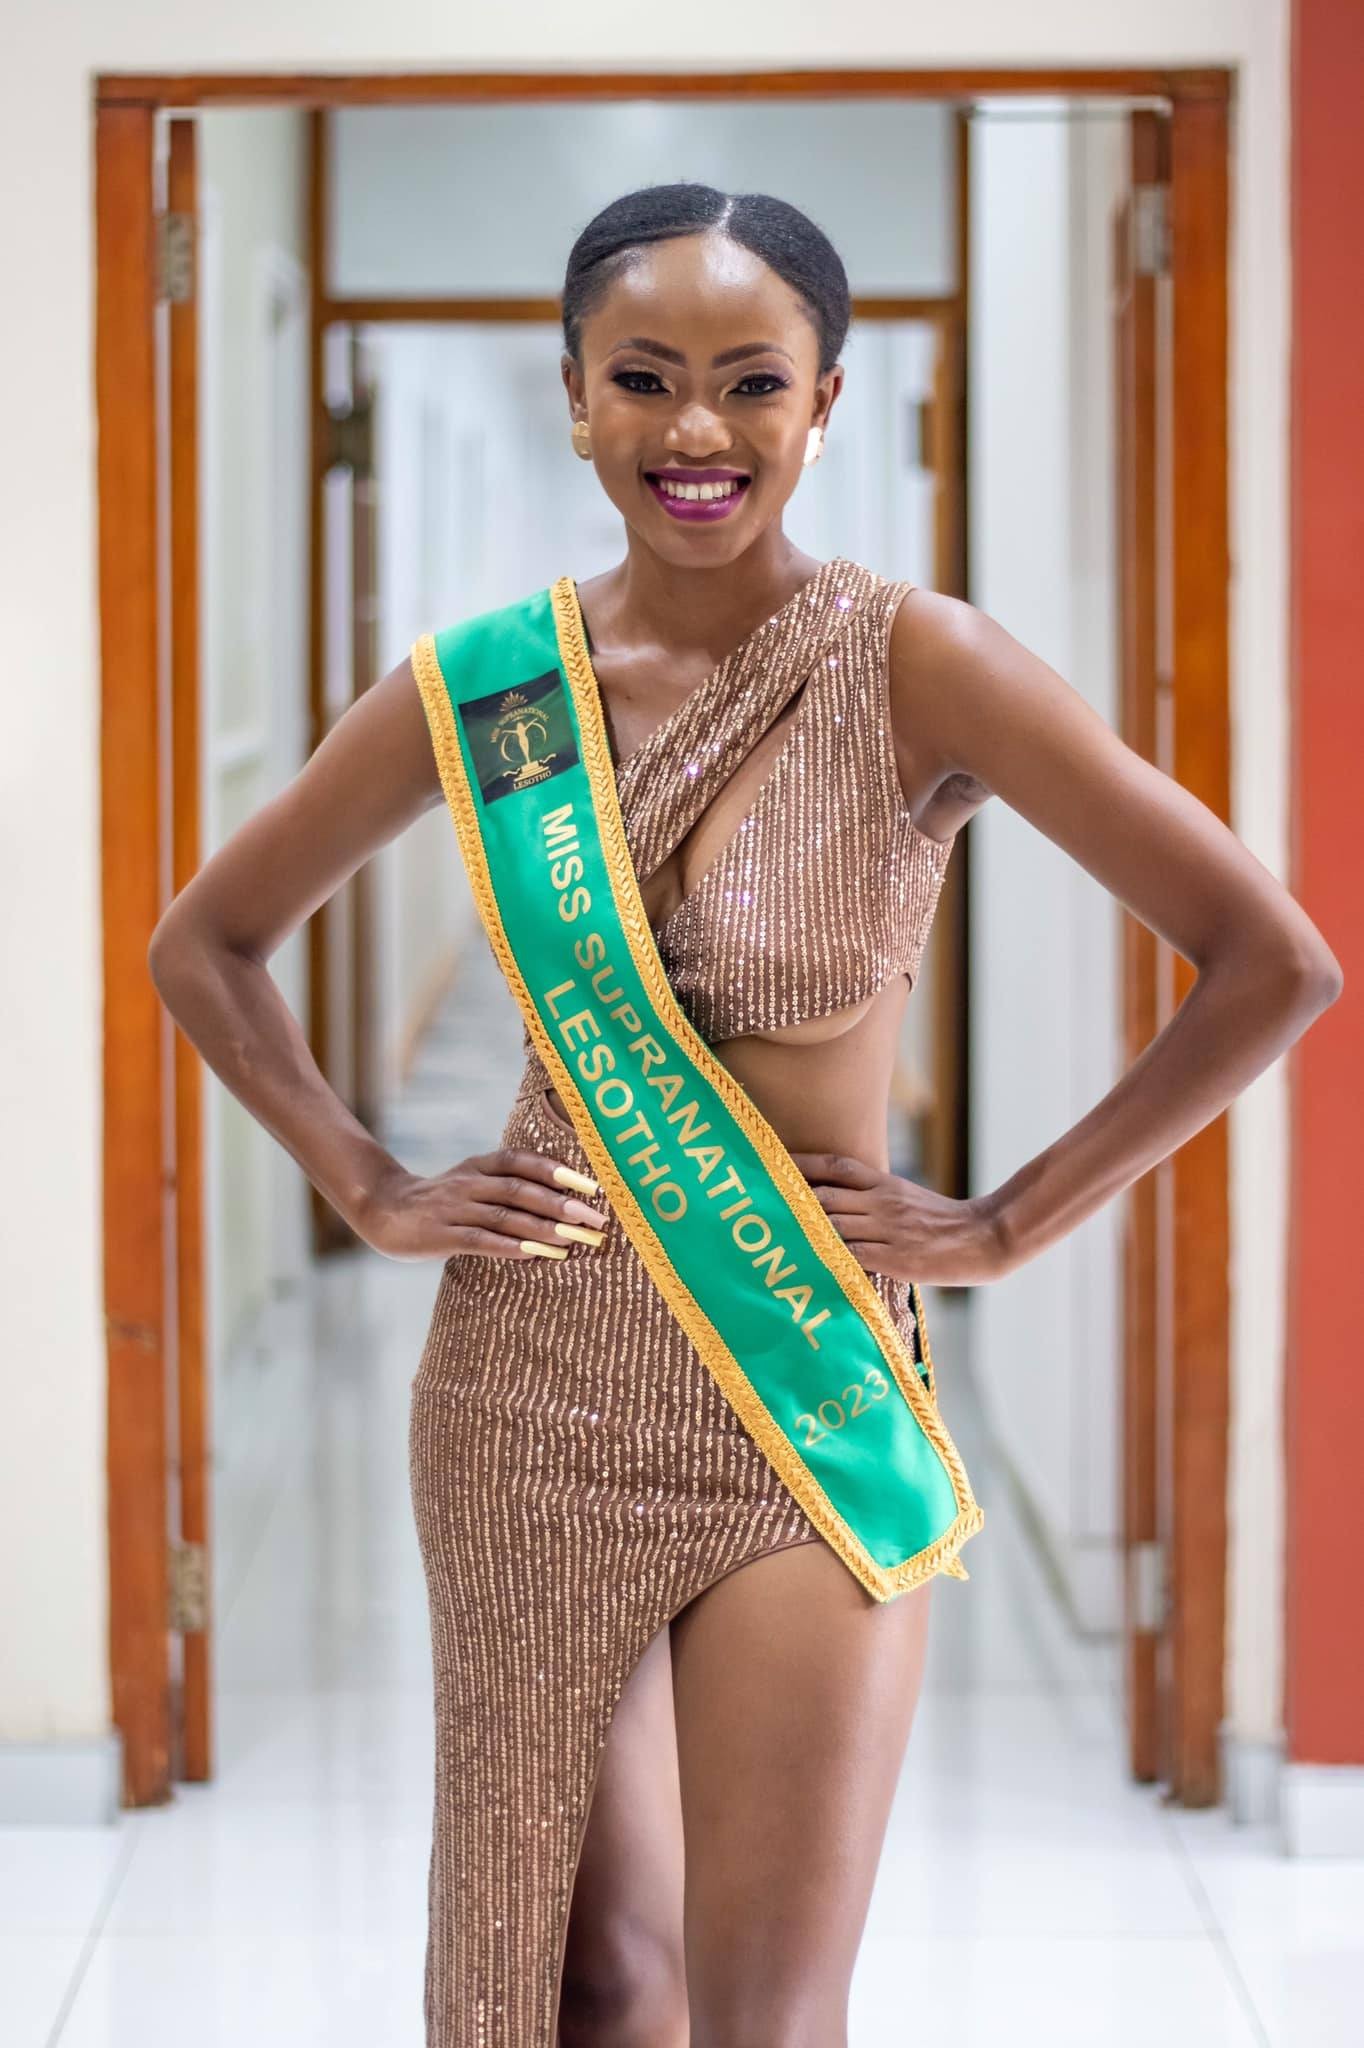 Người đẹp châu Phi bỏ thi Hoa hậu Siêu quốc gia vì quá nghèo - Ảnh 1.